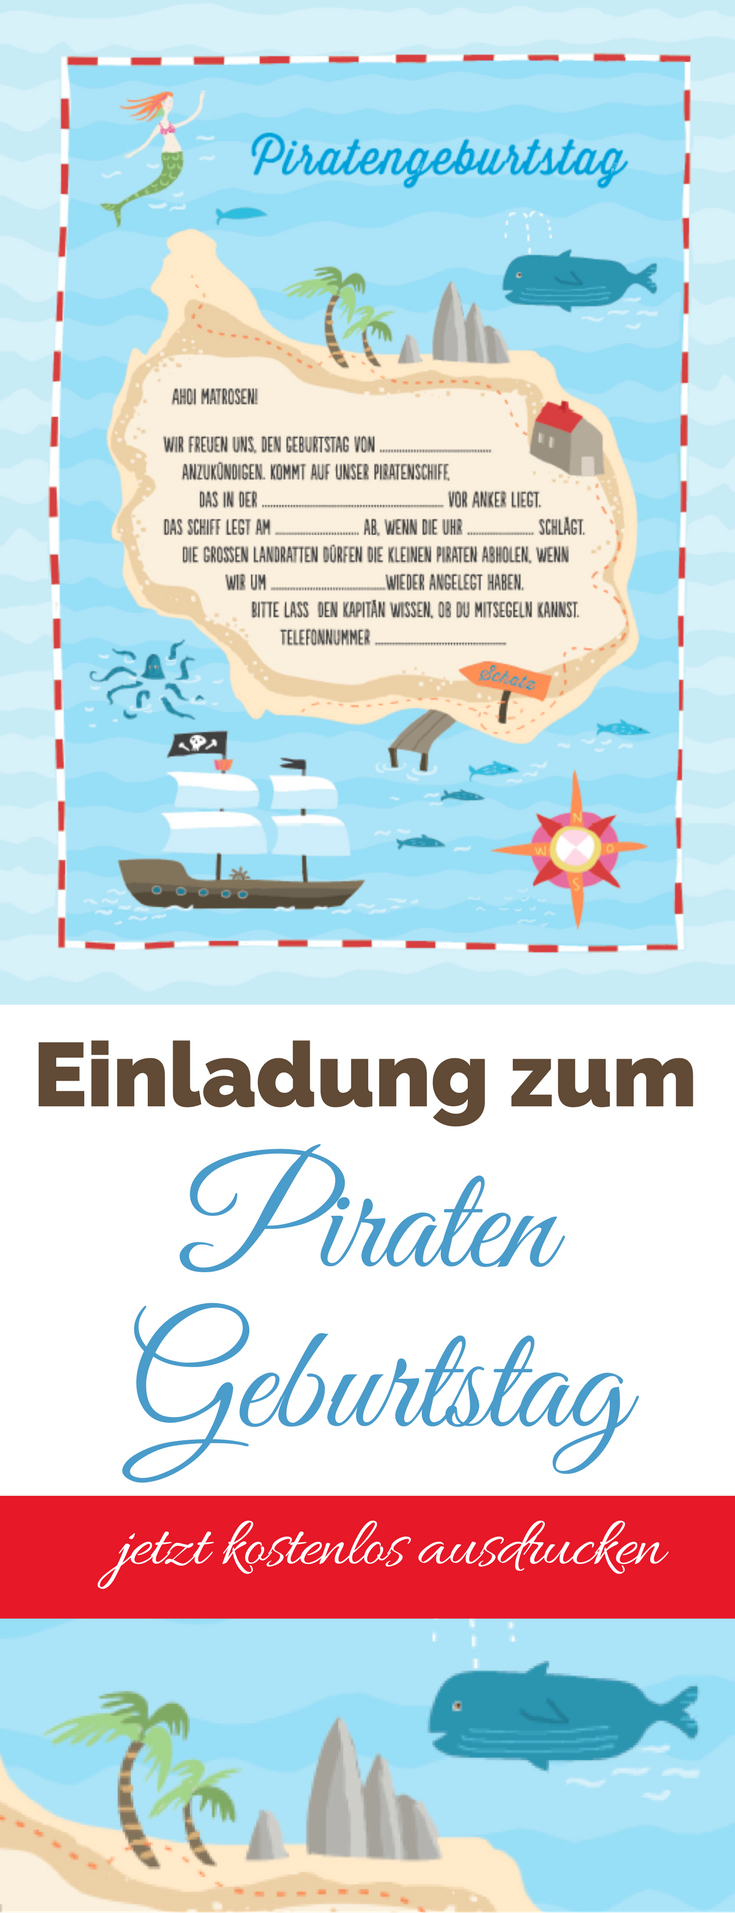 Piratenparty Einladung – Kostenloser Download Zum Selbst avec Piraten Einladung Text